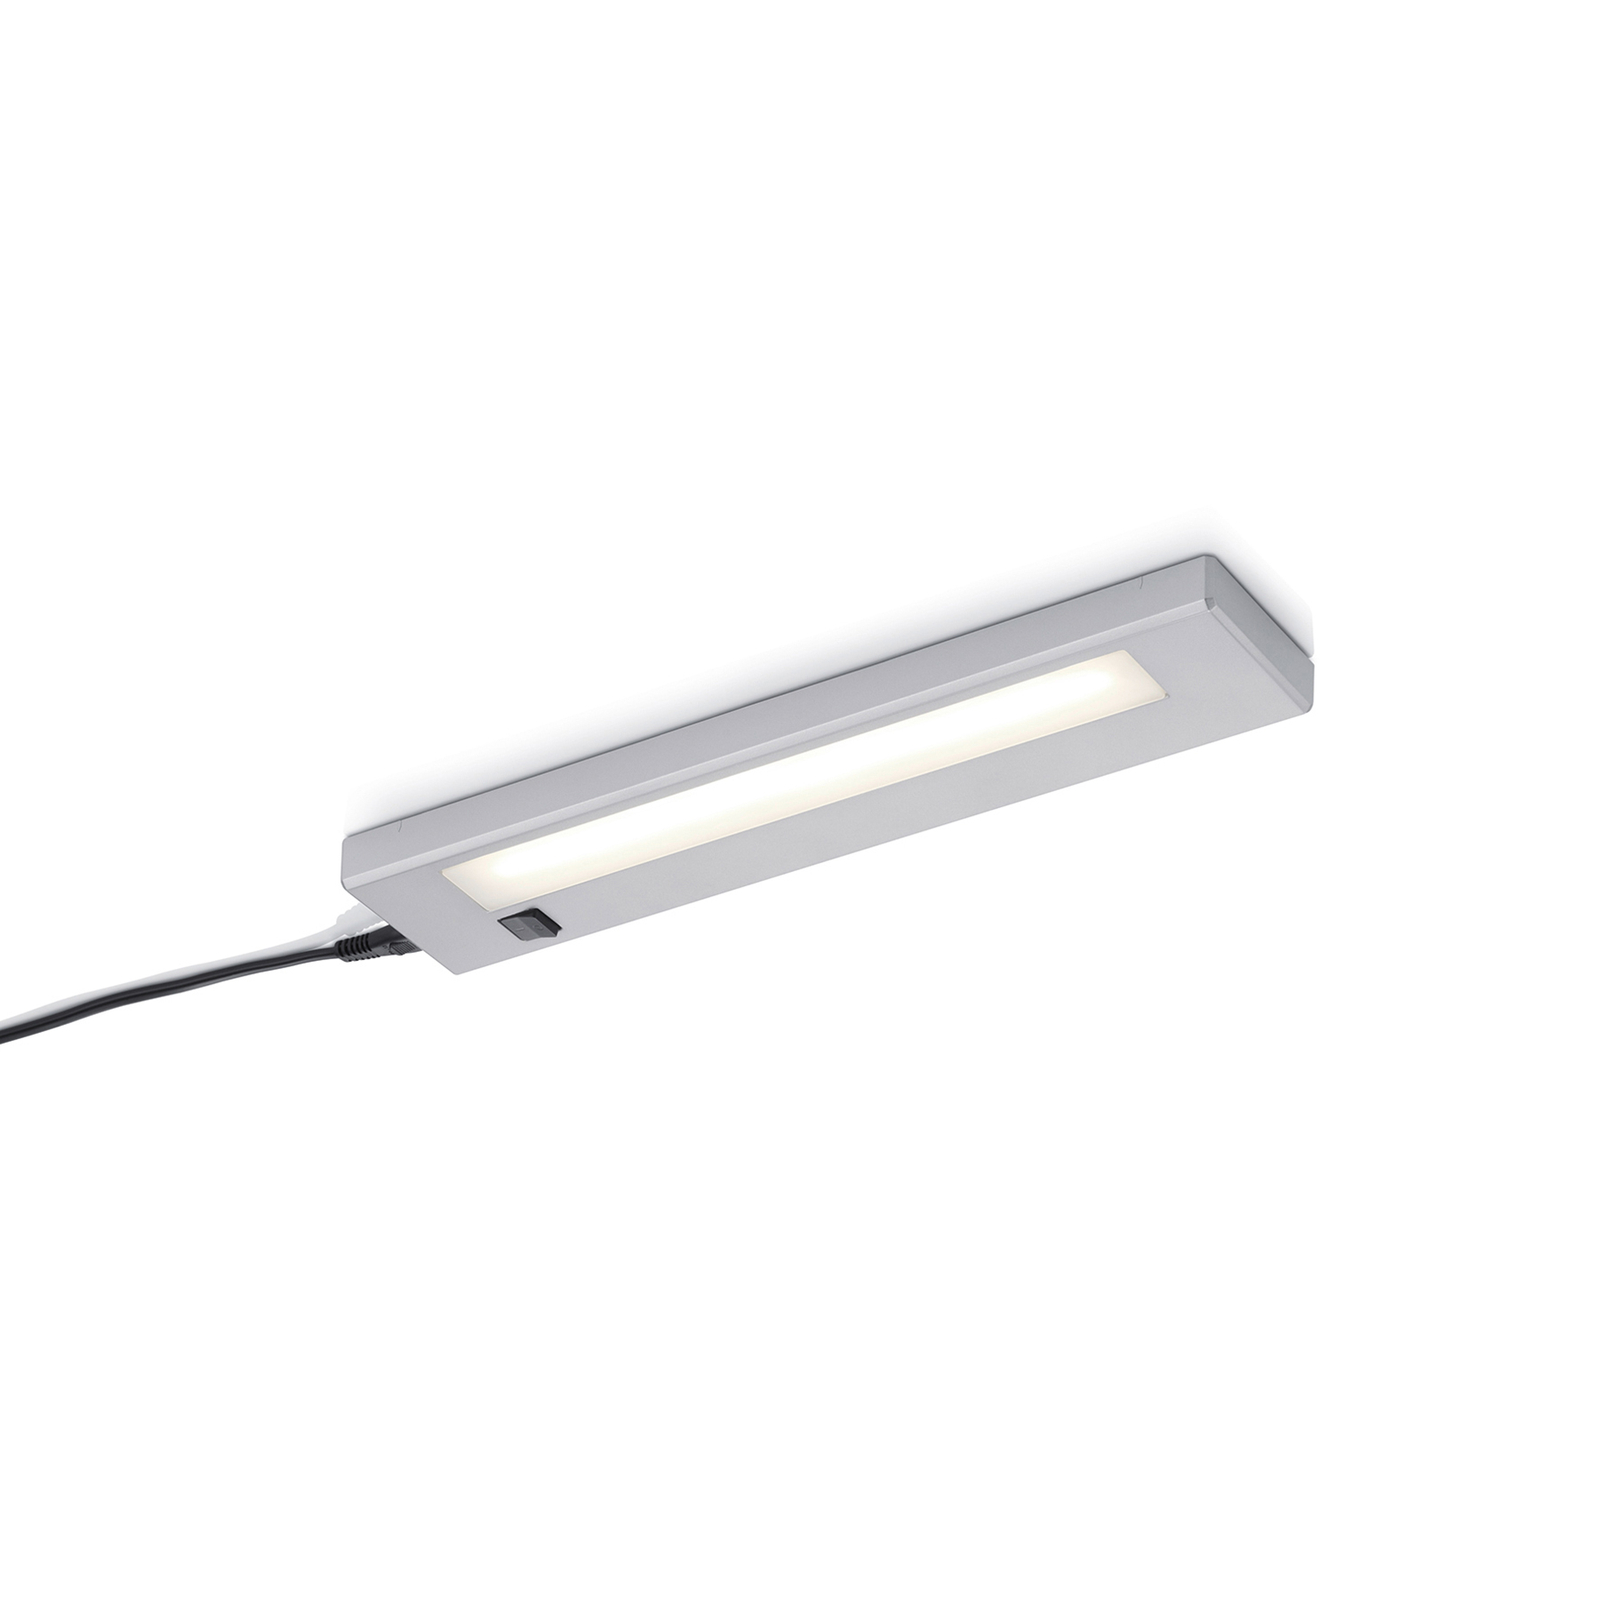 Lampada LED da mobili Alino, titanio, lunga 34 cm